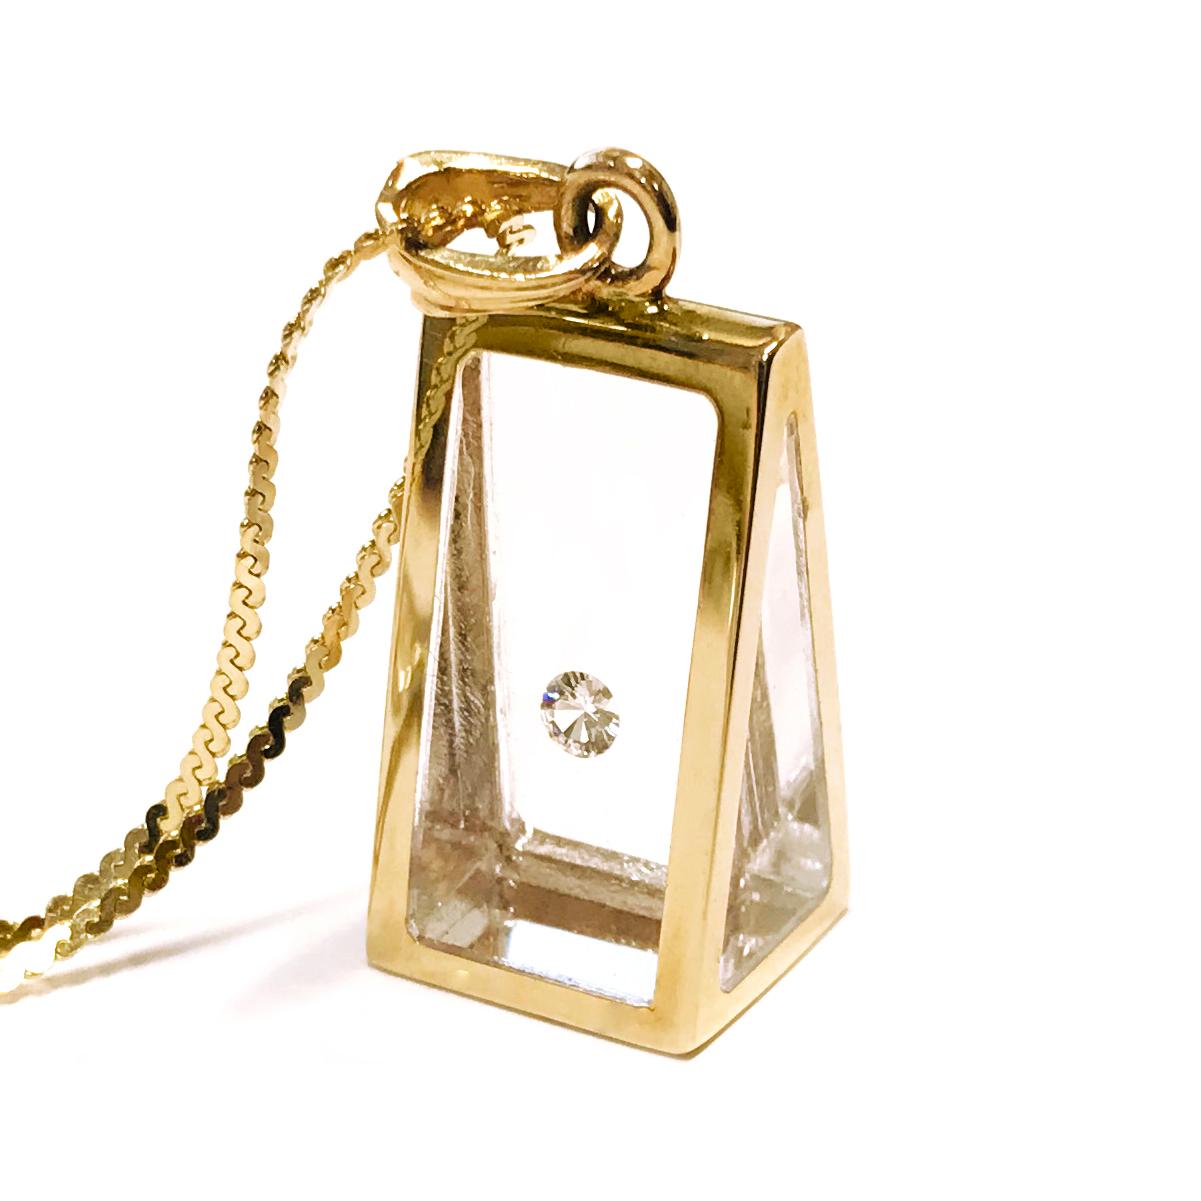 Pendentif pyramide de diamants flottants Incogem : or jaune 14k. Le pendentif est fabriqué à la main en or jaune 14k recyclé. Le diamant est un brillant, 58 facettes, pureté VS1 (G.I.A.), et couleur H (G.I.A.). Le diamant pèse 0,12 carat et flotte